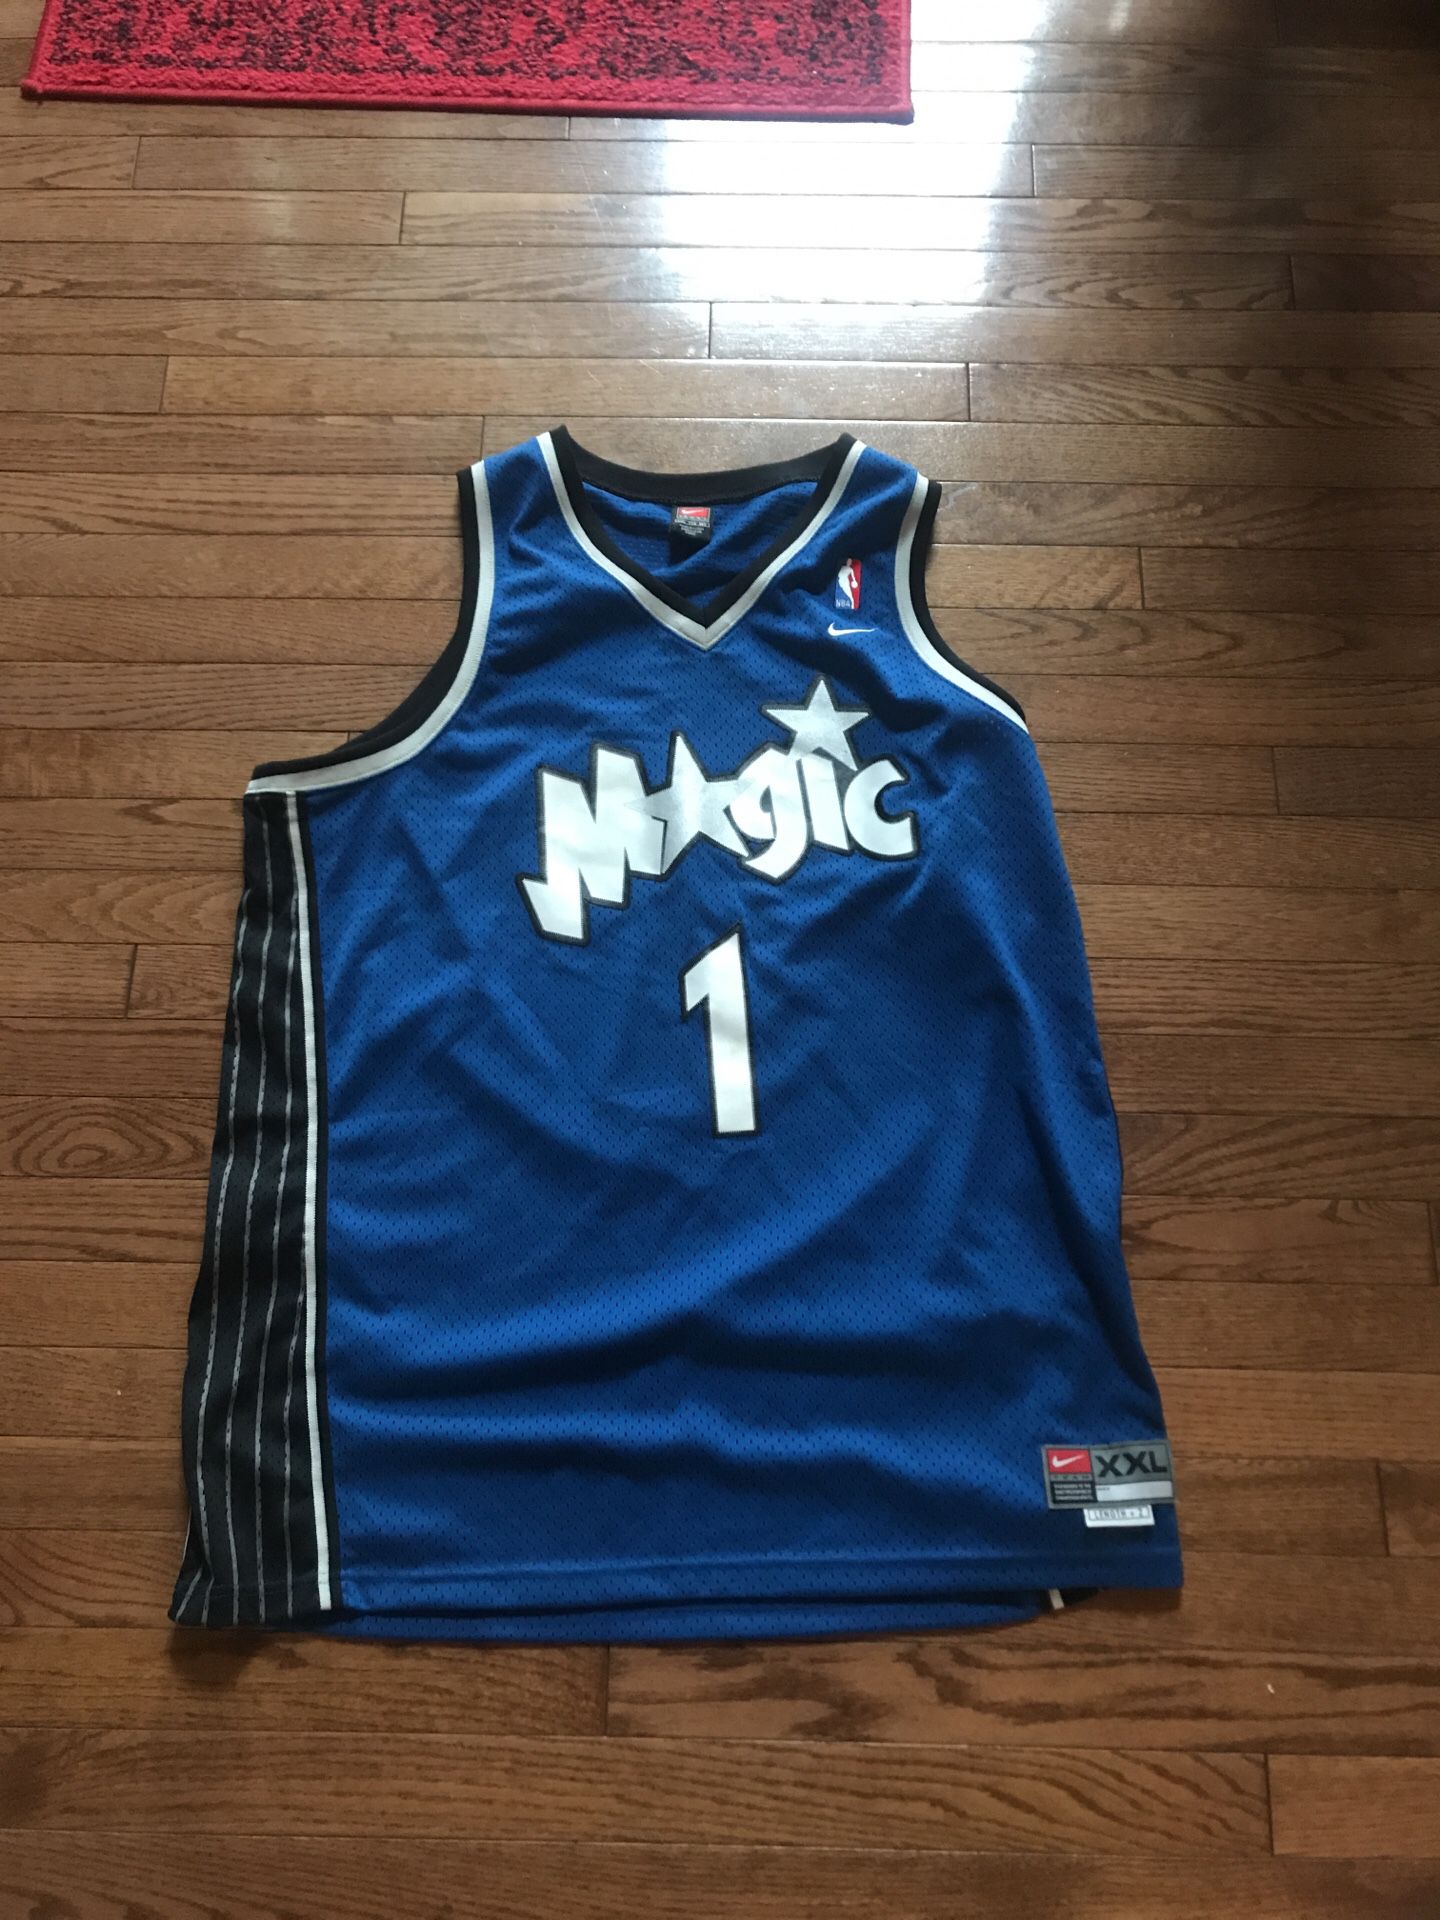 Nike x NBA stitched Tracy McGrady jersey